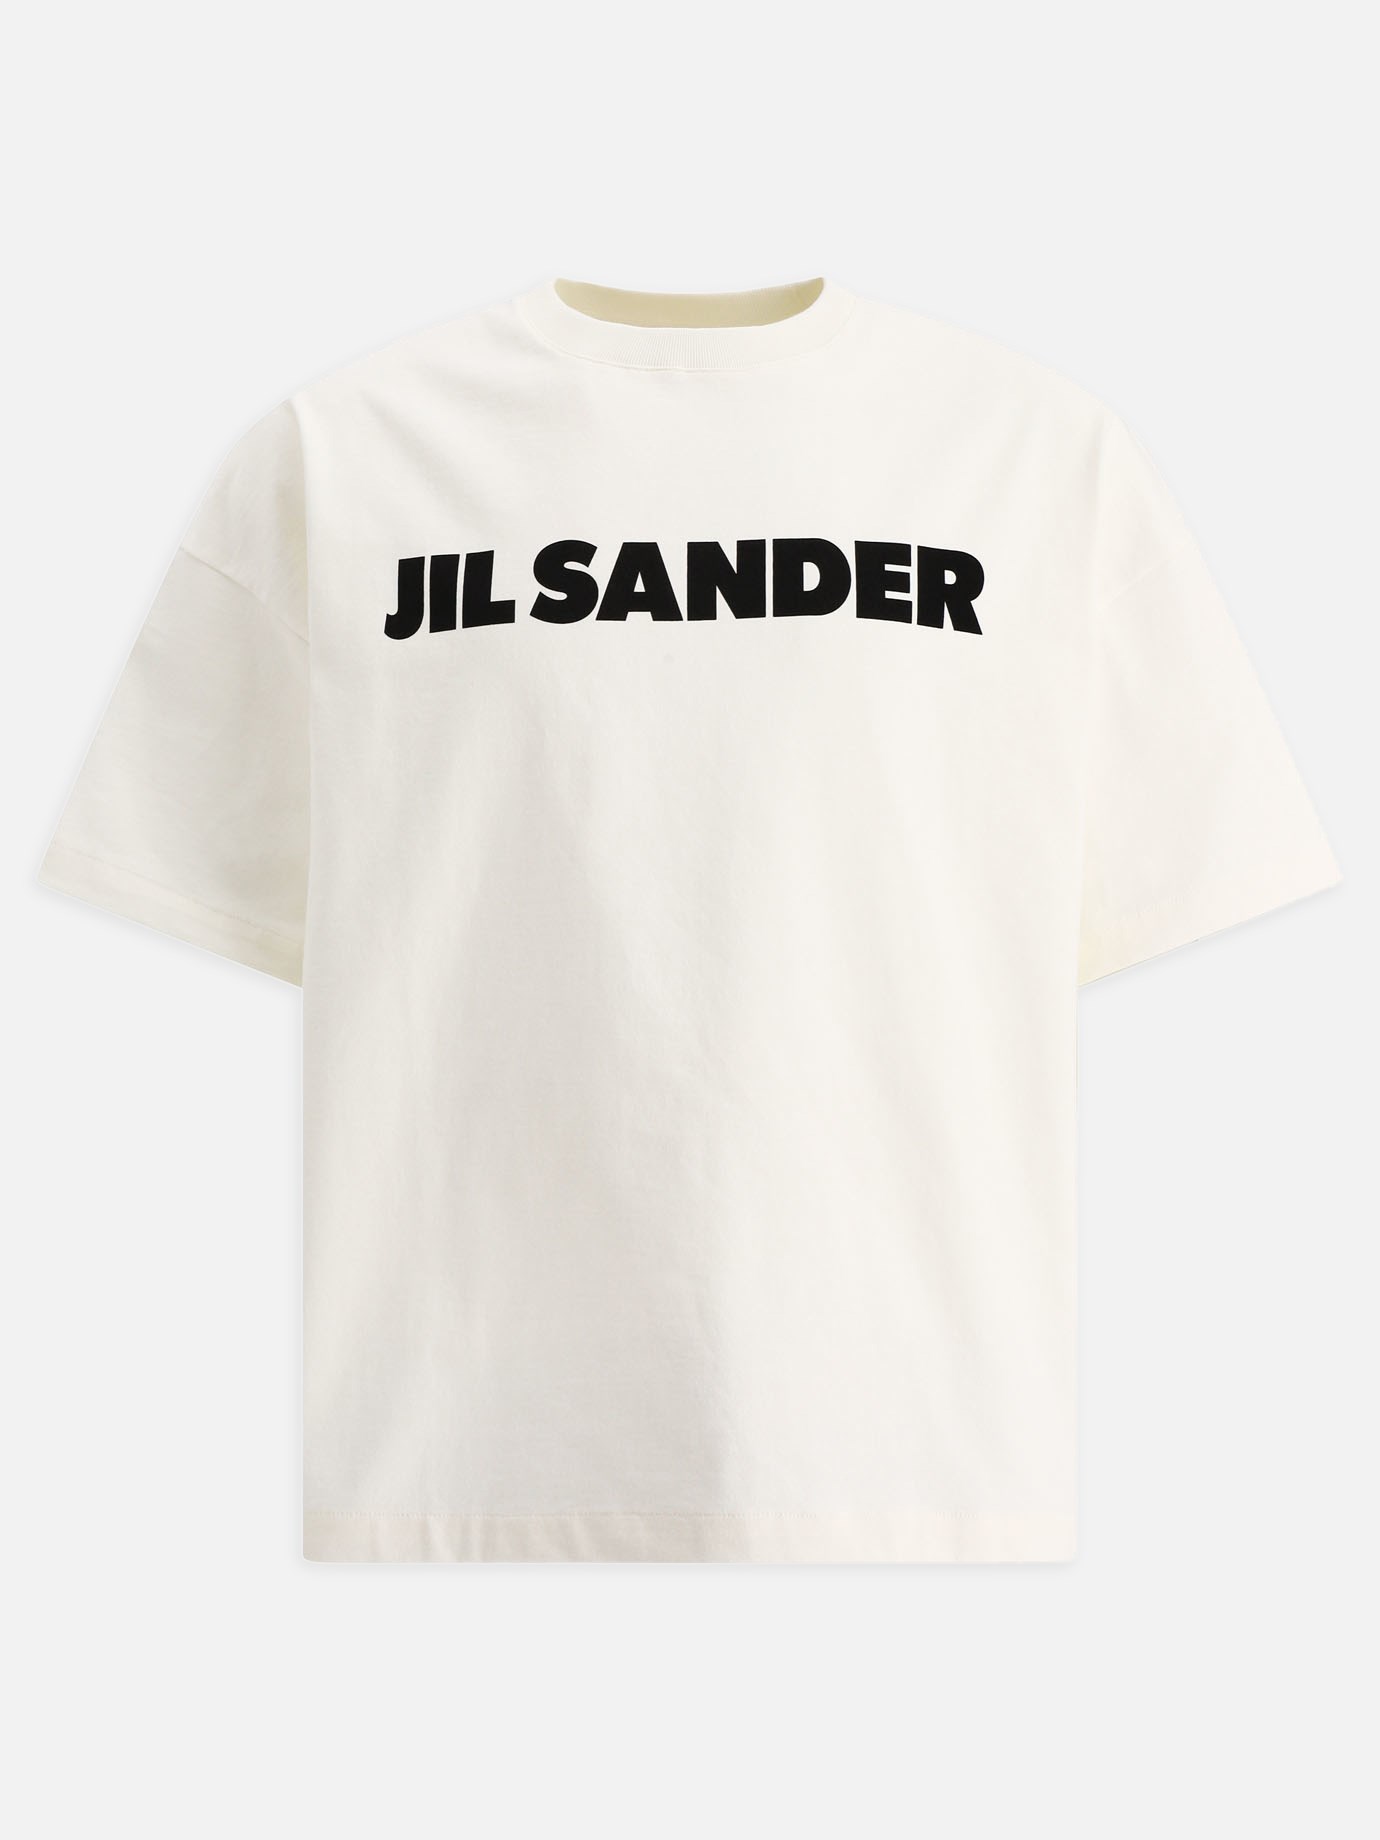  Jil Sander  t-shirtby Jil Sander - 4